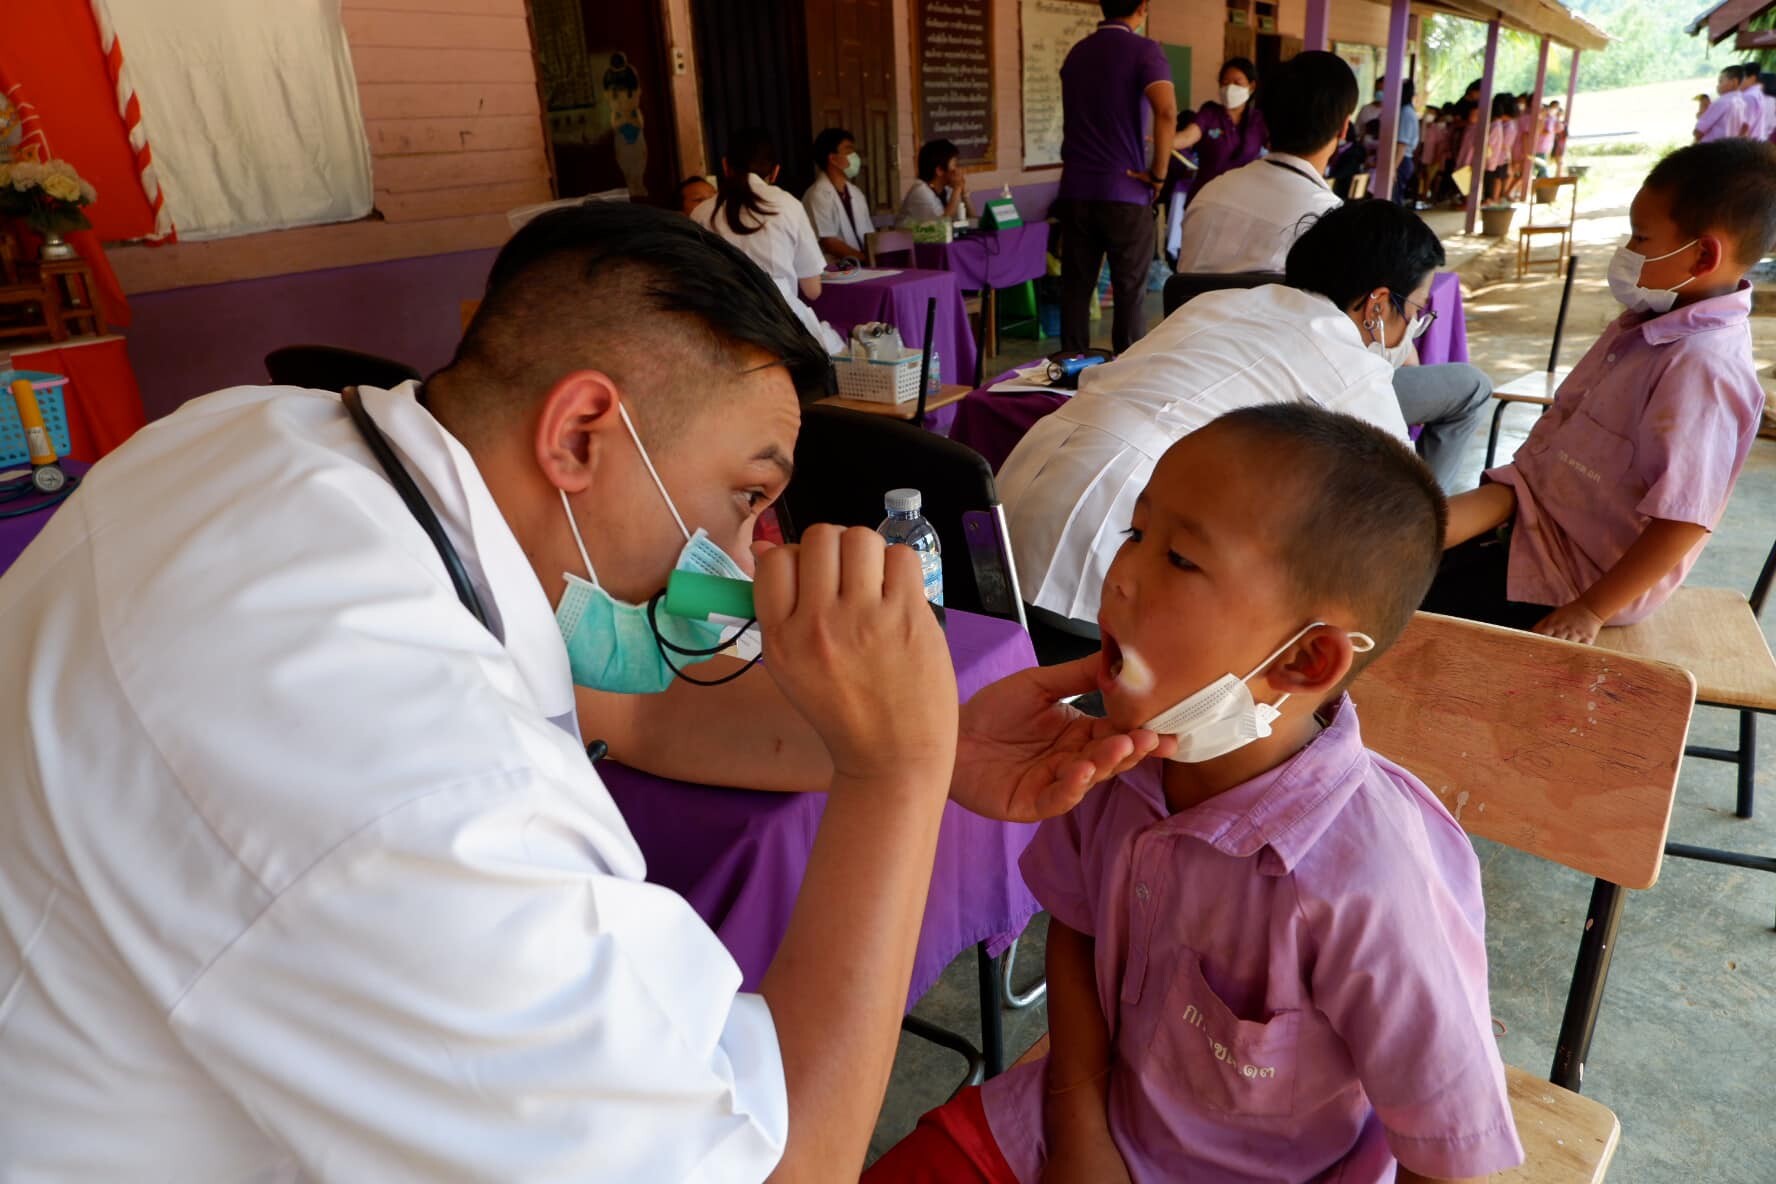 ลงพื้นที่ตามทีมหมอหน่วยแพทย์พระราชทานฯ ขึ้นเขาไปชายแดนไทย-พม่า ตรวจสุขภาพและให้บริการทันตกรรม